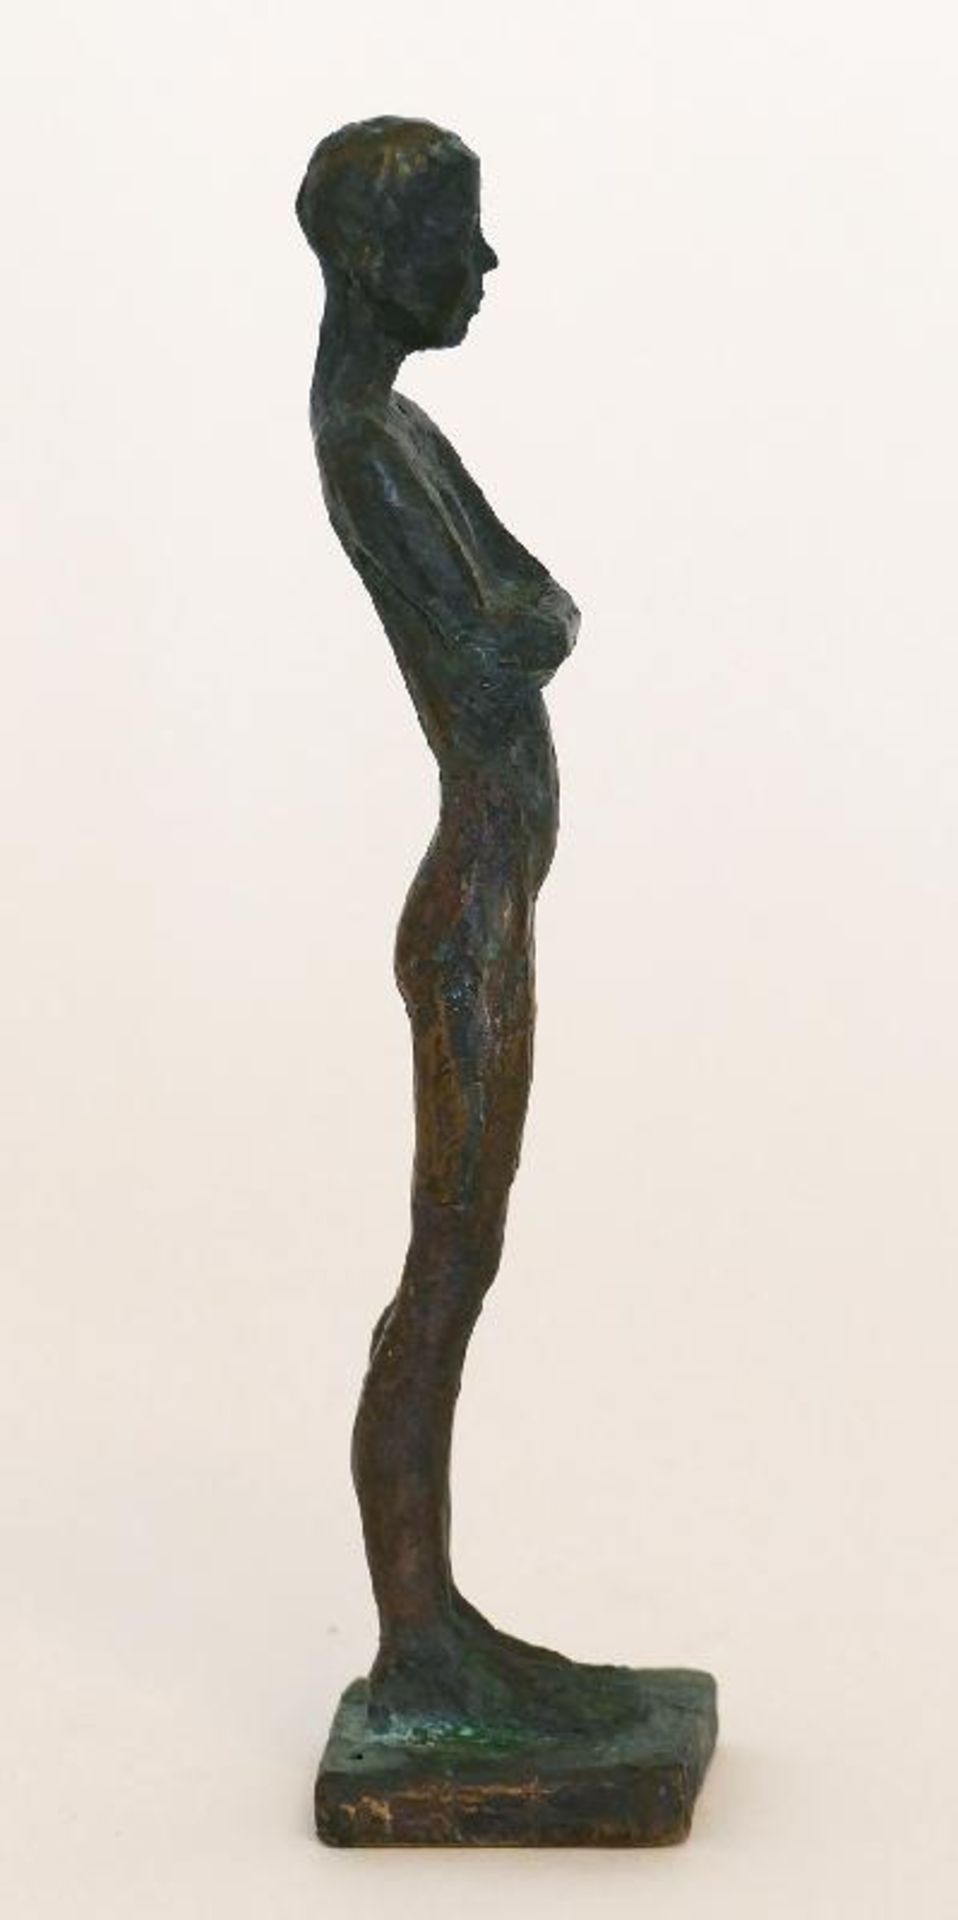 Adner, Heike (geb. 1960 in Wittenberg, lebt in Glienicke bei Berlin) Paul Bronze, 2017, h: 200 mm, - Image 6 of 6